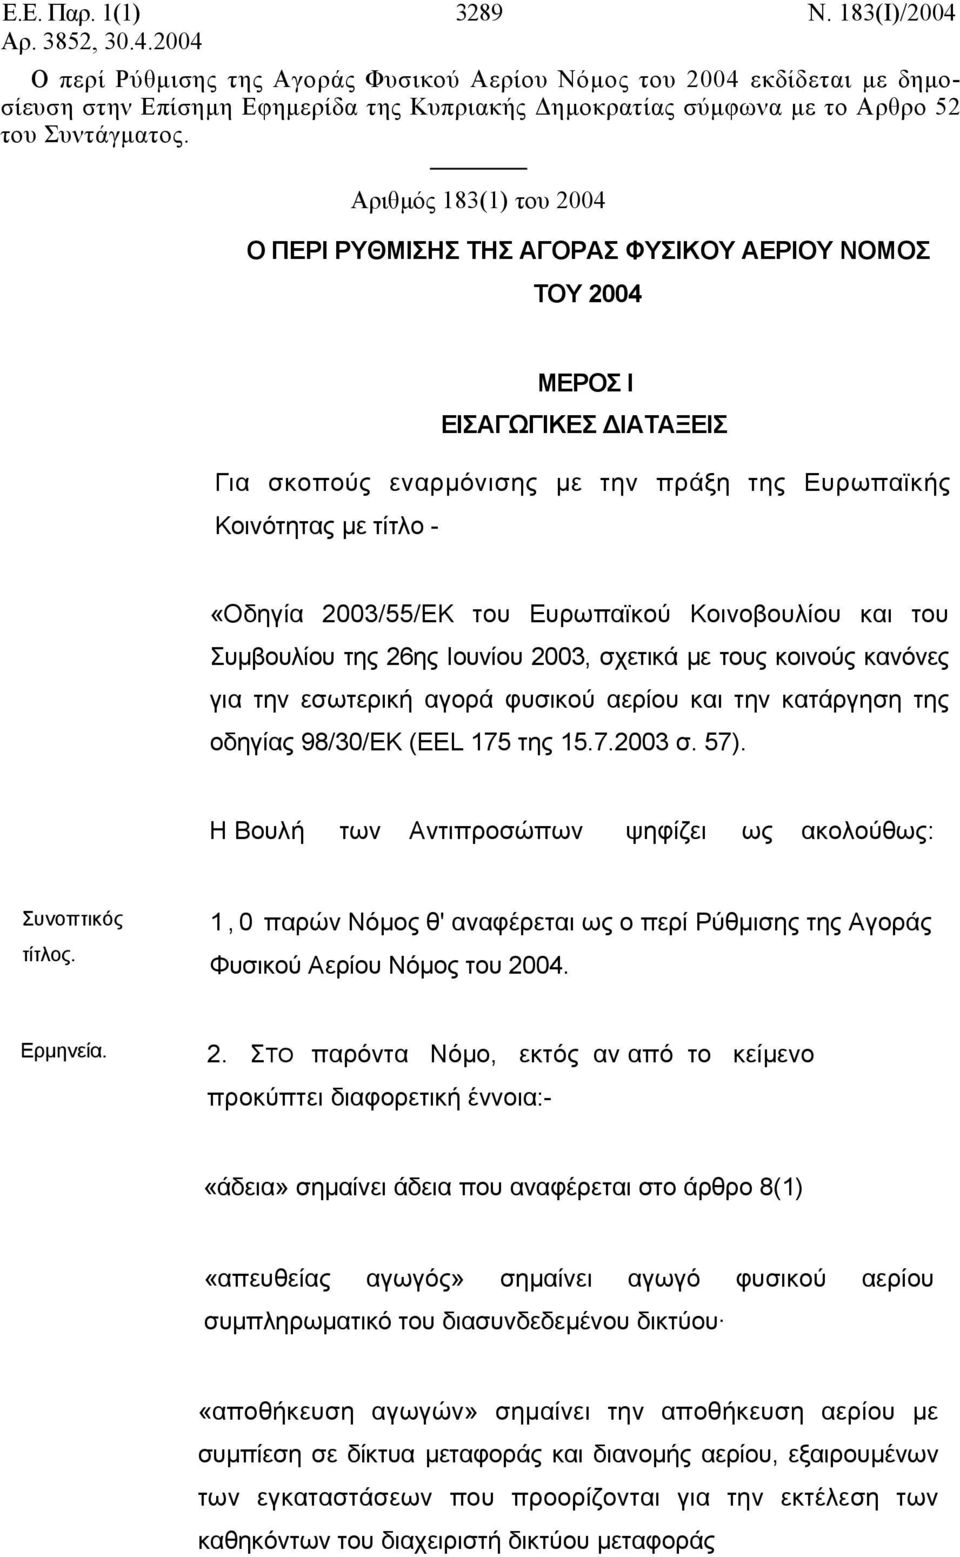 Αριθμός 183(1) του 2004 Ο ΠΕΡΙ ΡΥΘΜΙΣΗΣ ΤΗΣ ΑΓΟΡΑΣ ΦΥΣΙΚΟΥ ΑΕΡΙΟΥ ΝΟΜΟΣ ΤΟΥ 2004 ΜΕΡΟΣ Ι ΕΙΣΑΓΩΓΙΚΕΣ ΔΙΑΤΑΞΕΙΣ Για σκοπούς εναρμόνισης με την πράξη της Ευρωπαϊκής Κοινότητας με τίτλο - «Οδηγία